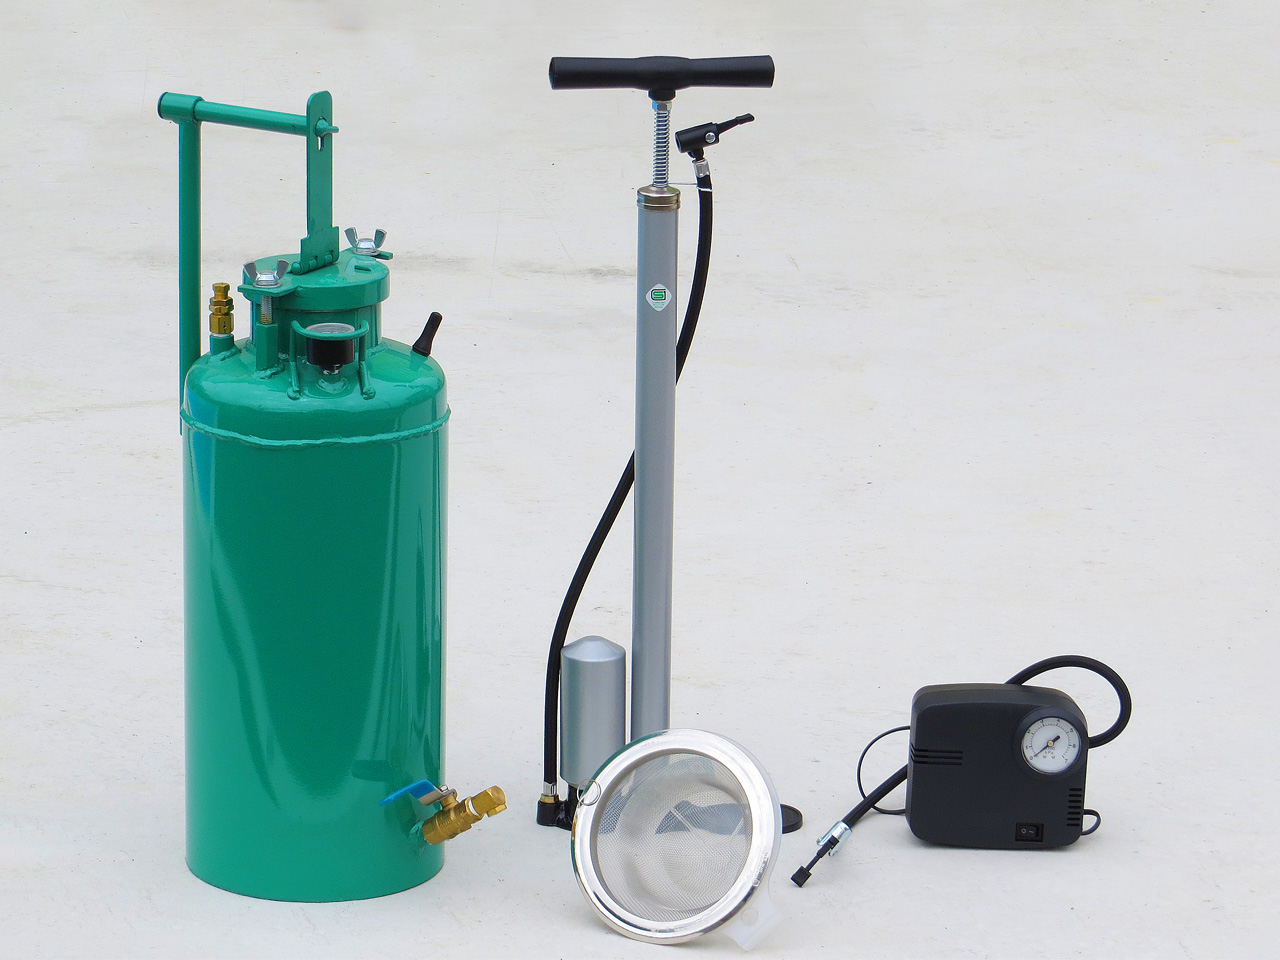 現場で手軽に作業できる省力型の噴霧器 NK-スプレヤーA アスファルト乳剤散布用 ノックス - 3